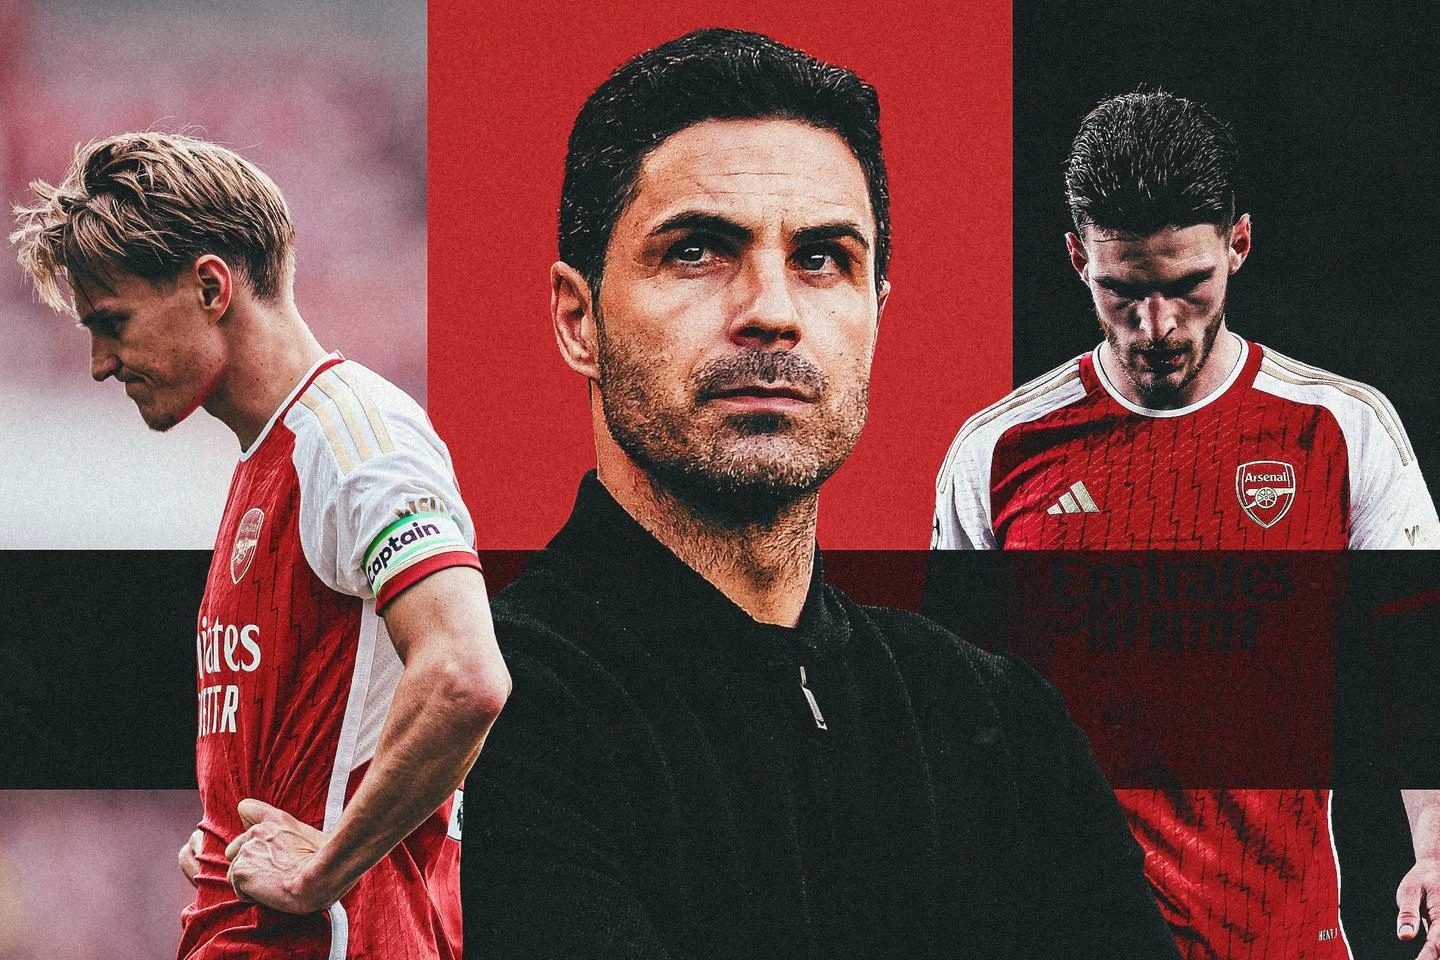 Mùa giải của Arsenal: Chiến đấu đến cùng, Ma sói và chuyến đi bí ẩn ở Dubai